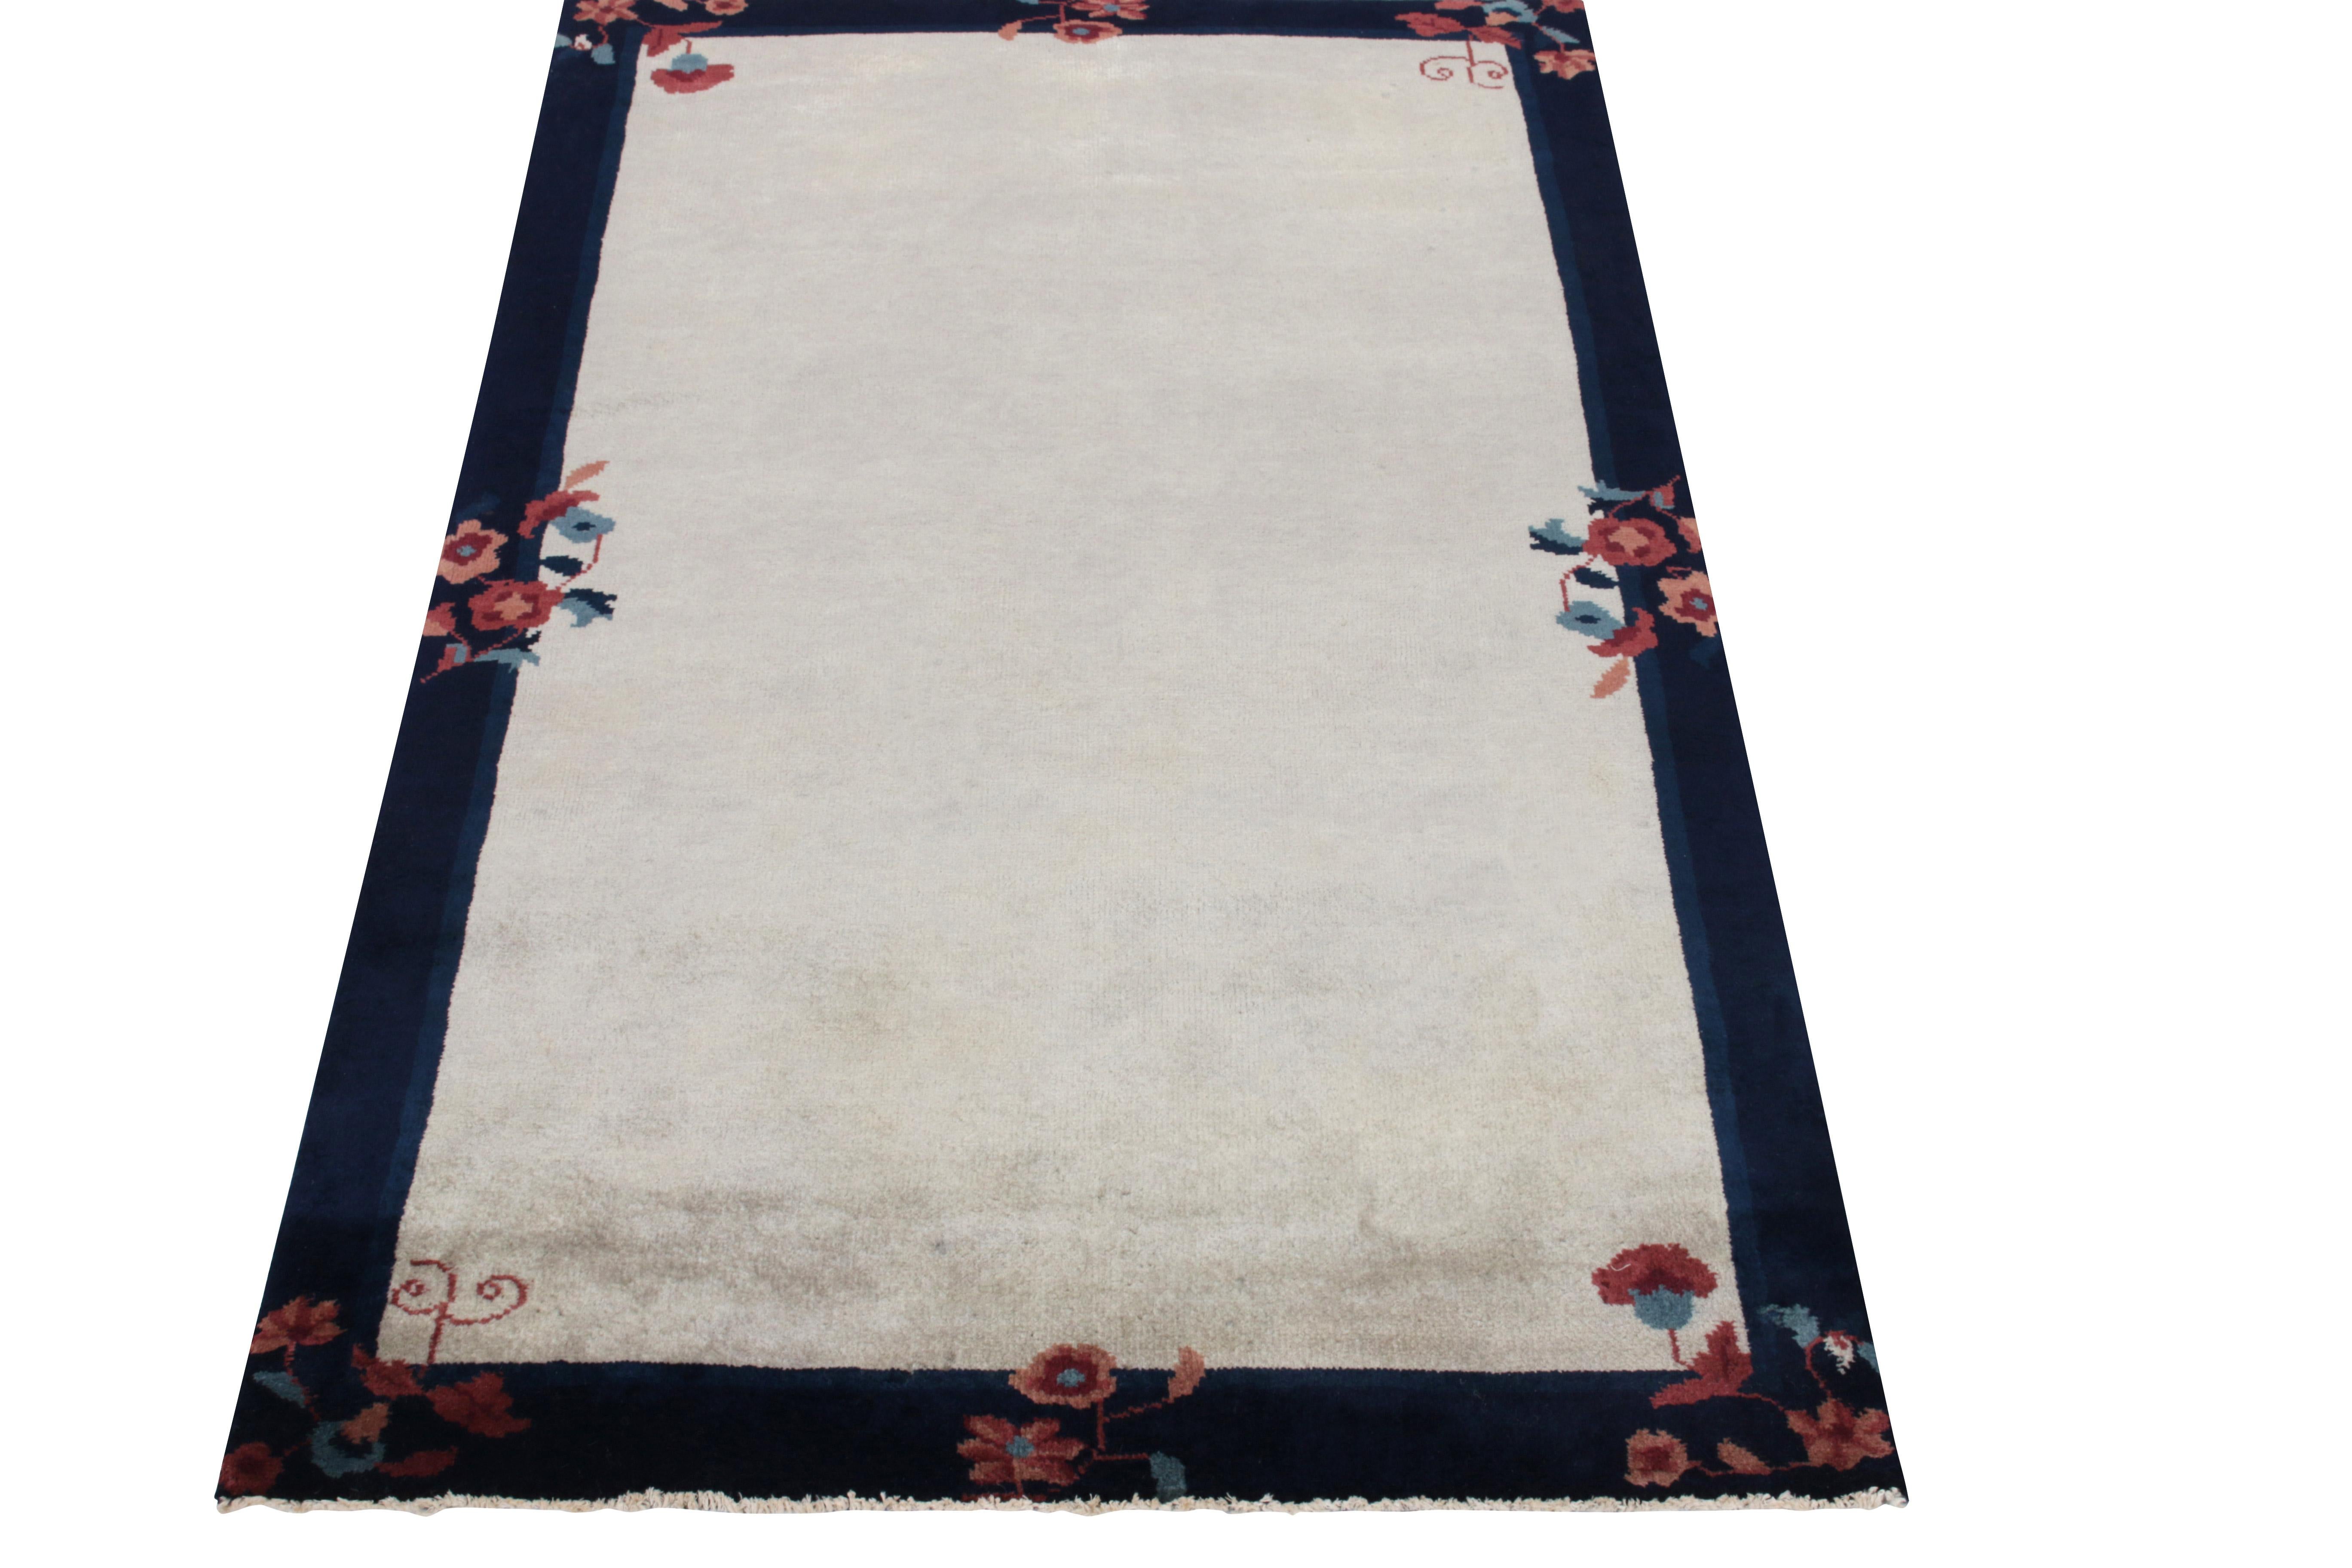 Inspiriert von den klassischen chinesischen Art-Déco-Teppichen der 1920er Jahre, ein klassischer 3x5-Übergangsteppich aus der begehrten Antique & Vintage-Kollektion von Rug & Kilim. Elegante florale Muster entlang der tiefblauen Bordüren in